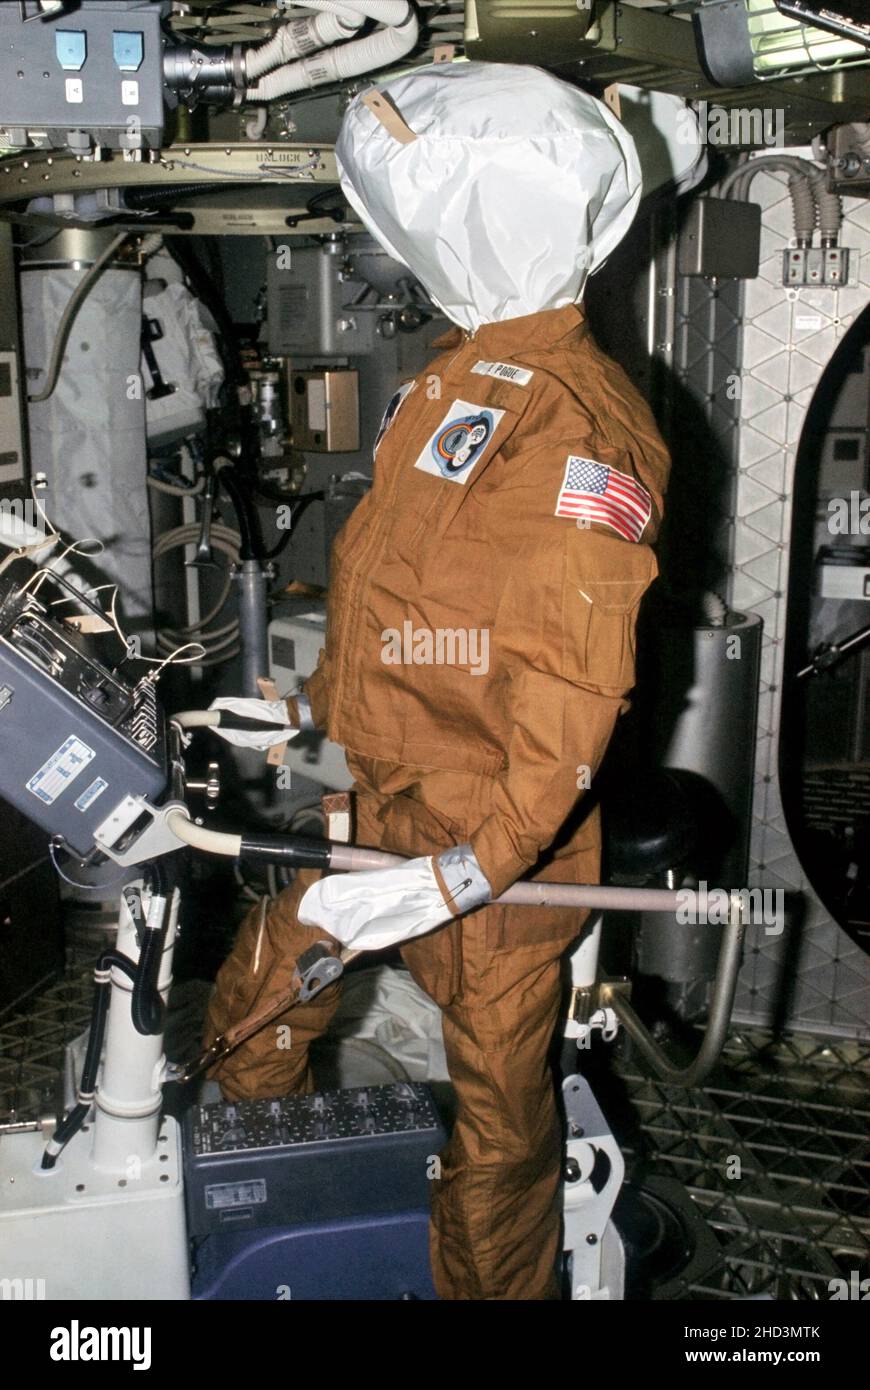 (Juli-September 1973) --- Dieses Foto ist eine Illustration der humorvollen Seite der Skylab 3 Crew. Diese Dummy wurde in der Skylab Raumstation von der Skylab 3 Besatzung zurückgelassen, die von der Skylab 4 Besatzung gefunden wurde. Der Dummy ist in einem Fluganzug gekleidet und auf dem Fahrrad-Ergometer aufgesetzt. Das Namensschild weist darauf hin, dass es William R. Pogue, Skylab Pilot, repräsentiert. Der Dummy für Gerald P. Carr, Kommandant von Skylab 4, wurde in die Unterkörper-Unterdruck-Vorrichtung eingesetzt. Der Dummy, der Edward G. Gibson darstellt, wurde im Abfallfach zurückgelassen. Die Astronauten Alan L. Bean, Owen K. Garriott und Jack R. Stockfoto